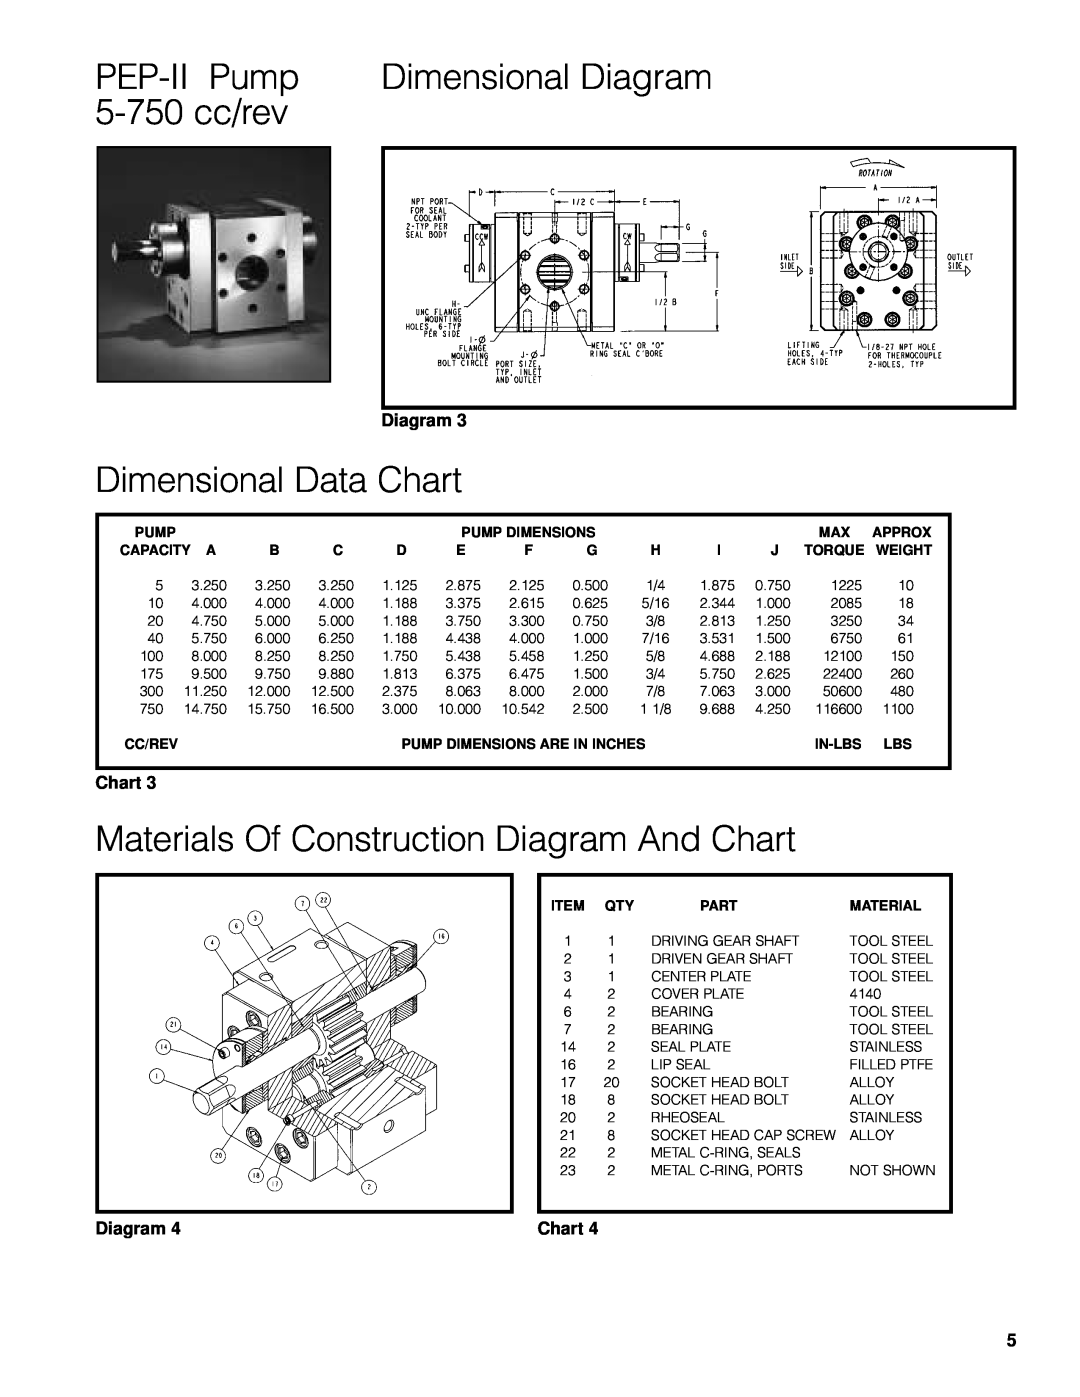 Zenith Pumps manual 5-750cc/rev, PEP-IIPump, Dimensional Diagram, Dimensional Data Chart 